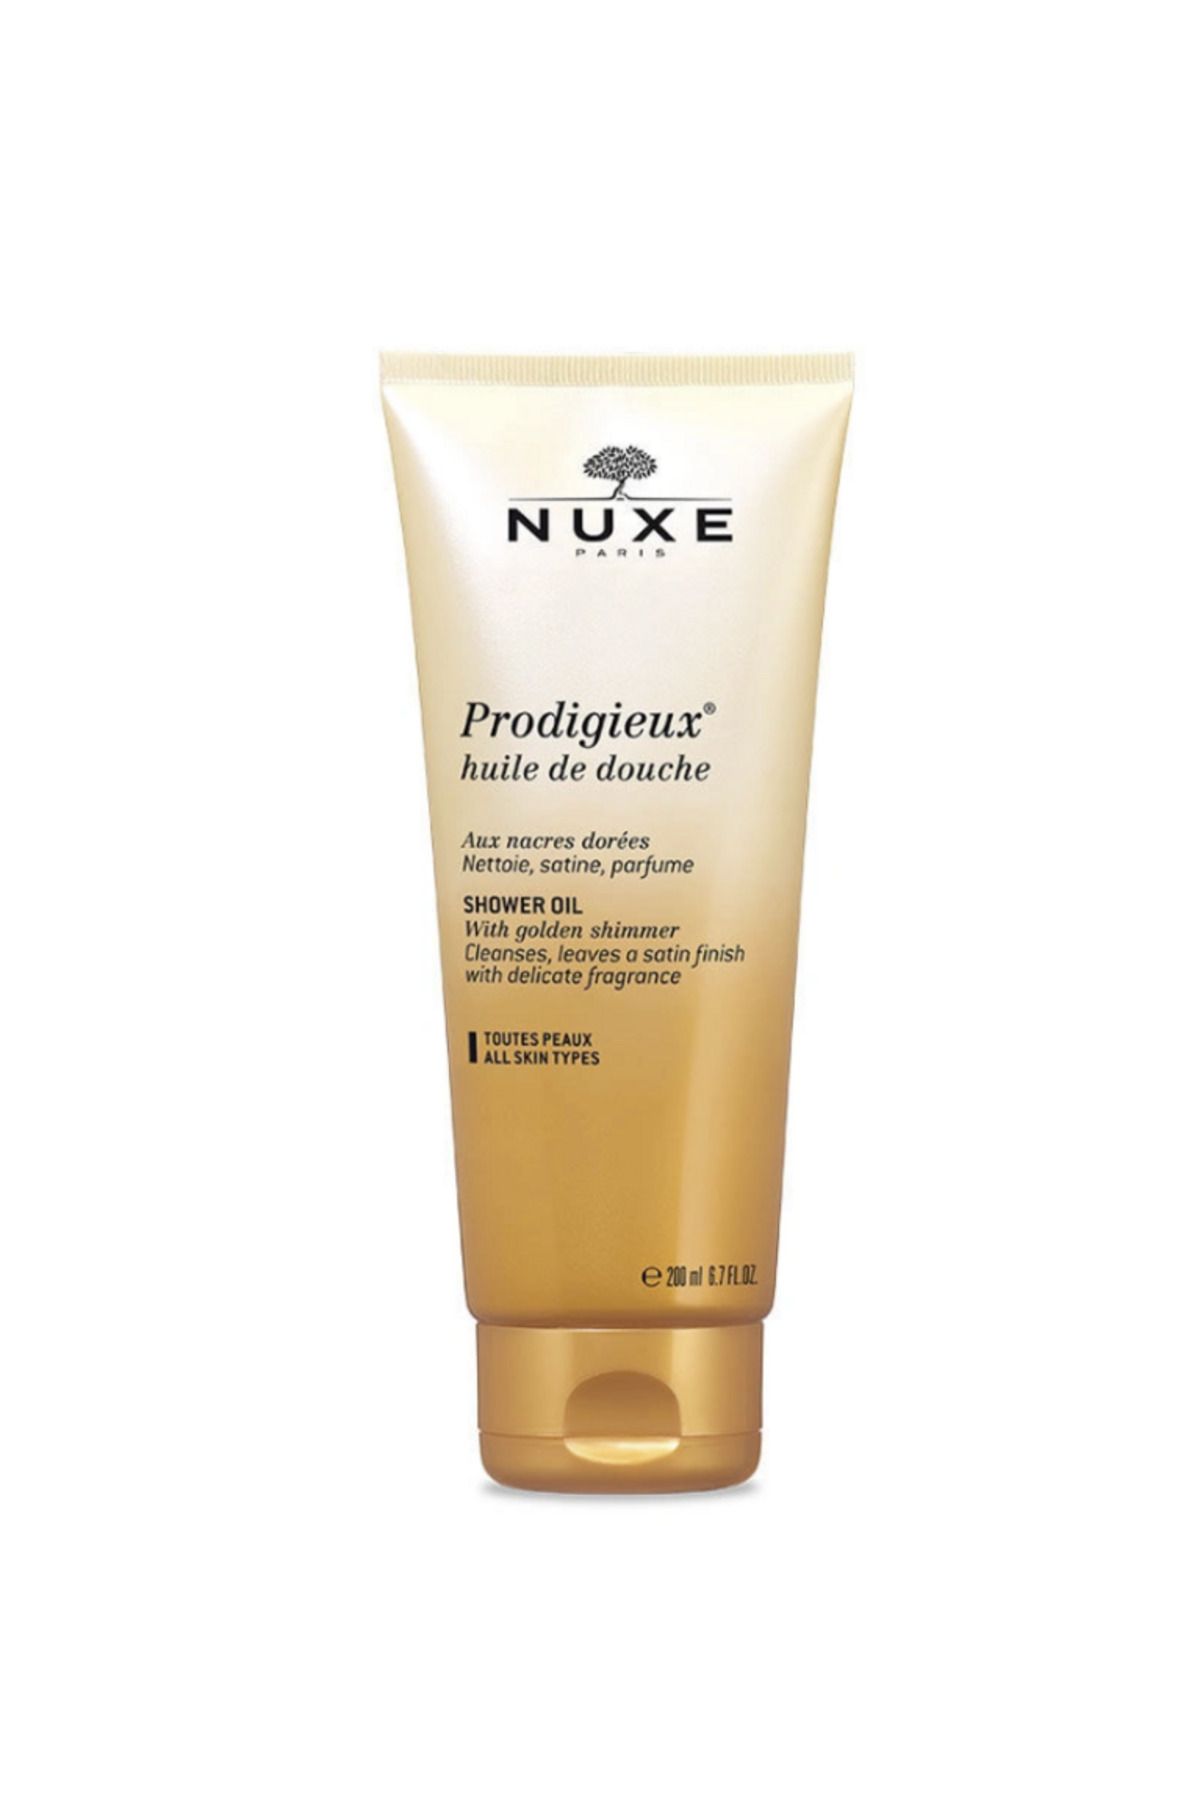 Nuxe Prodigieux Duş Yağı 200ml İnce Ve İpeksi Köpüğüyle Hassas Temizleme Sağlar